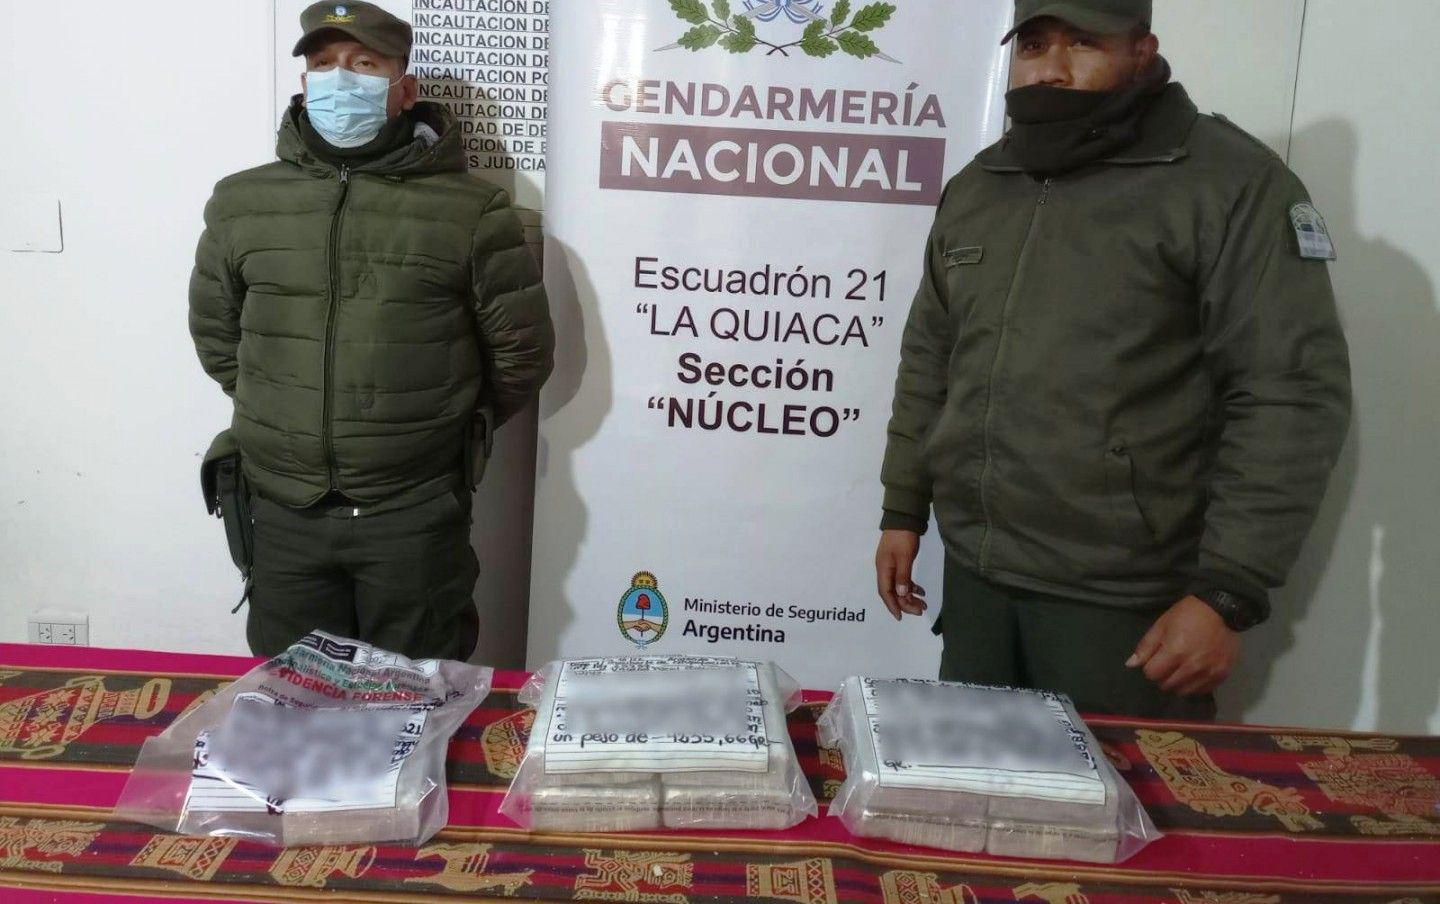 Detienen a un boliviano con paquetes extrantildeos en su mochila- cargaba 9 kilos de cocaiacutena